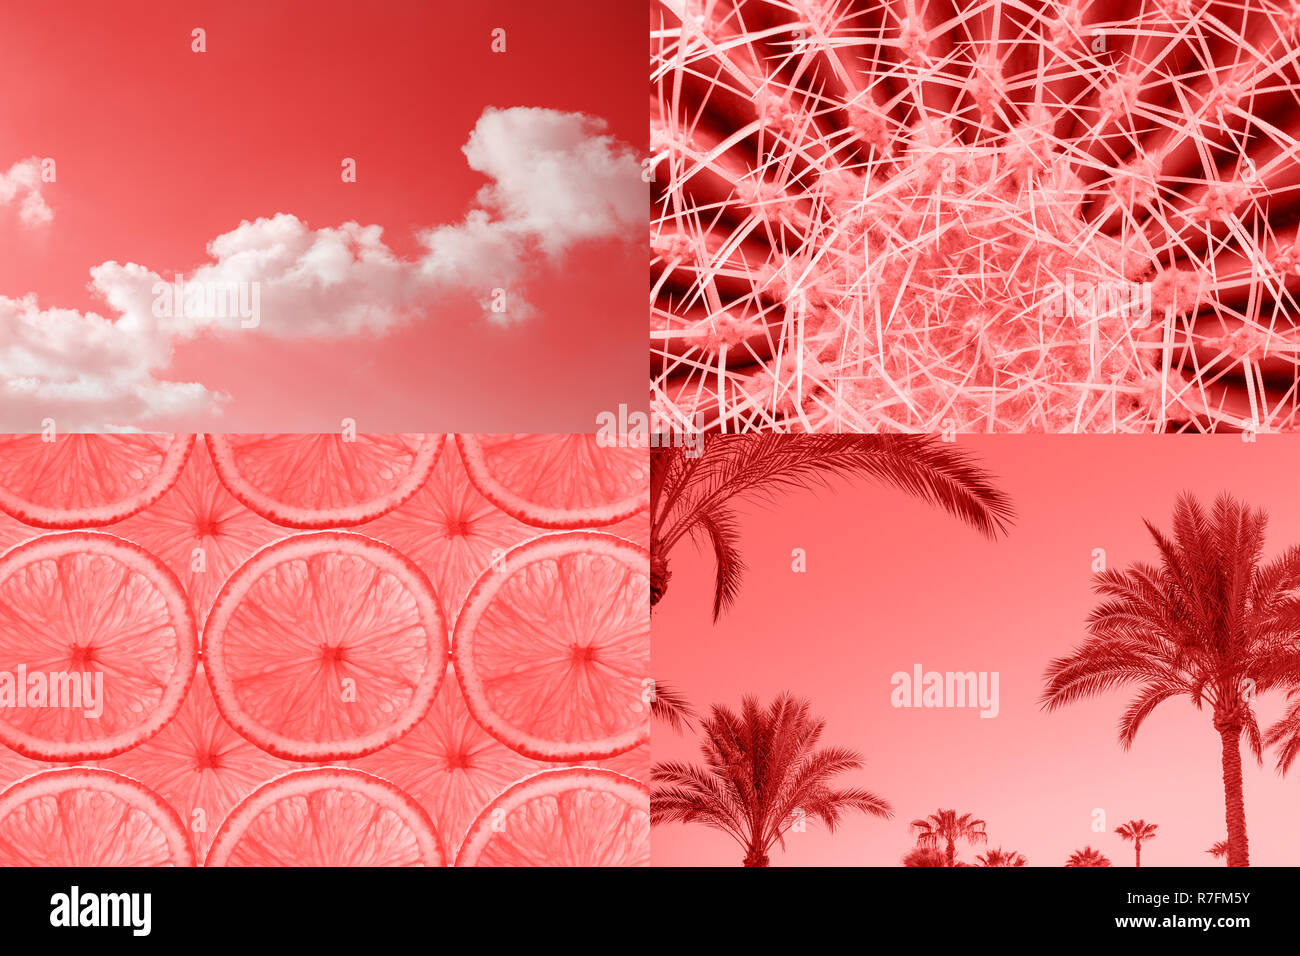 Tropische Ccreative Collage von lebende Koralle Farbe für das Jahr 2019 angespornt. Heißer Sommer Stimmung, Mode minimal. Stockfoto